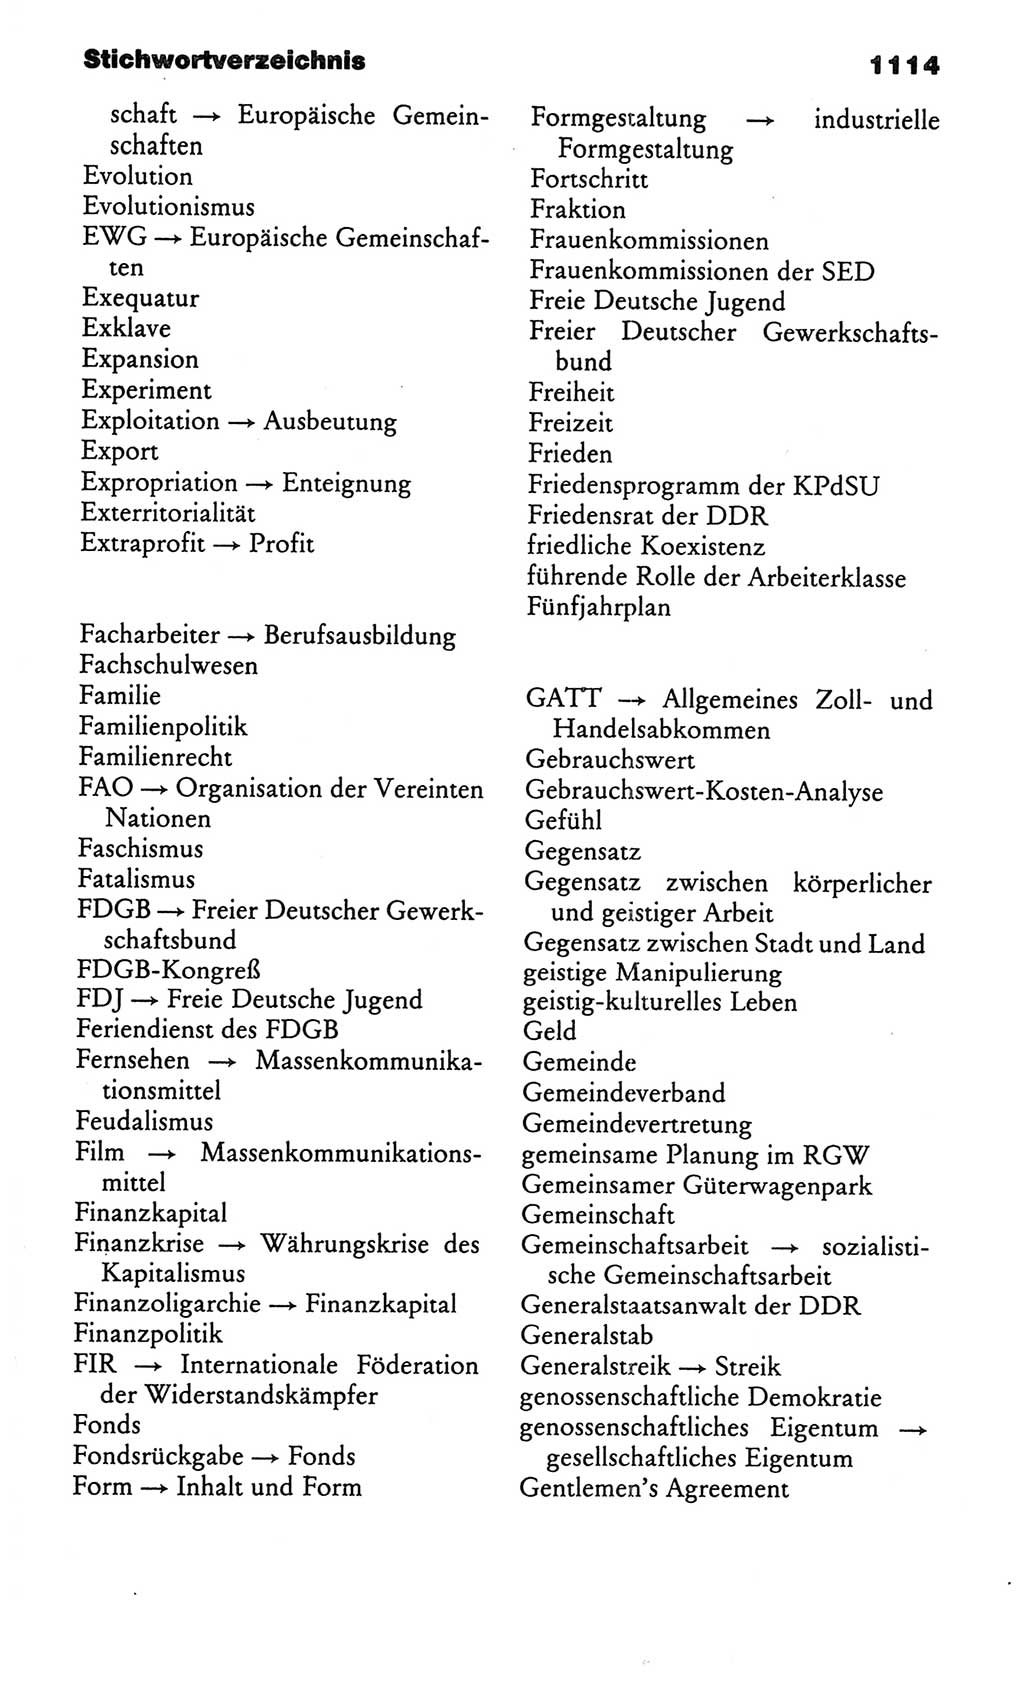 Kleines politisches Wörterbuch [Deutsche Demokratische Republik (DDR)] 1986, Seite 1114 (Kl. pol. Wb. DDR 1986, S. 1114)